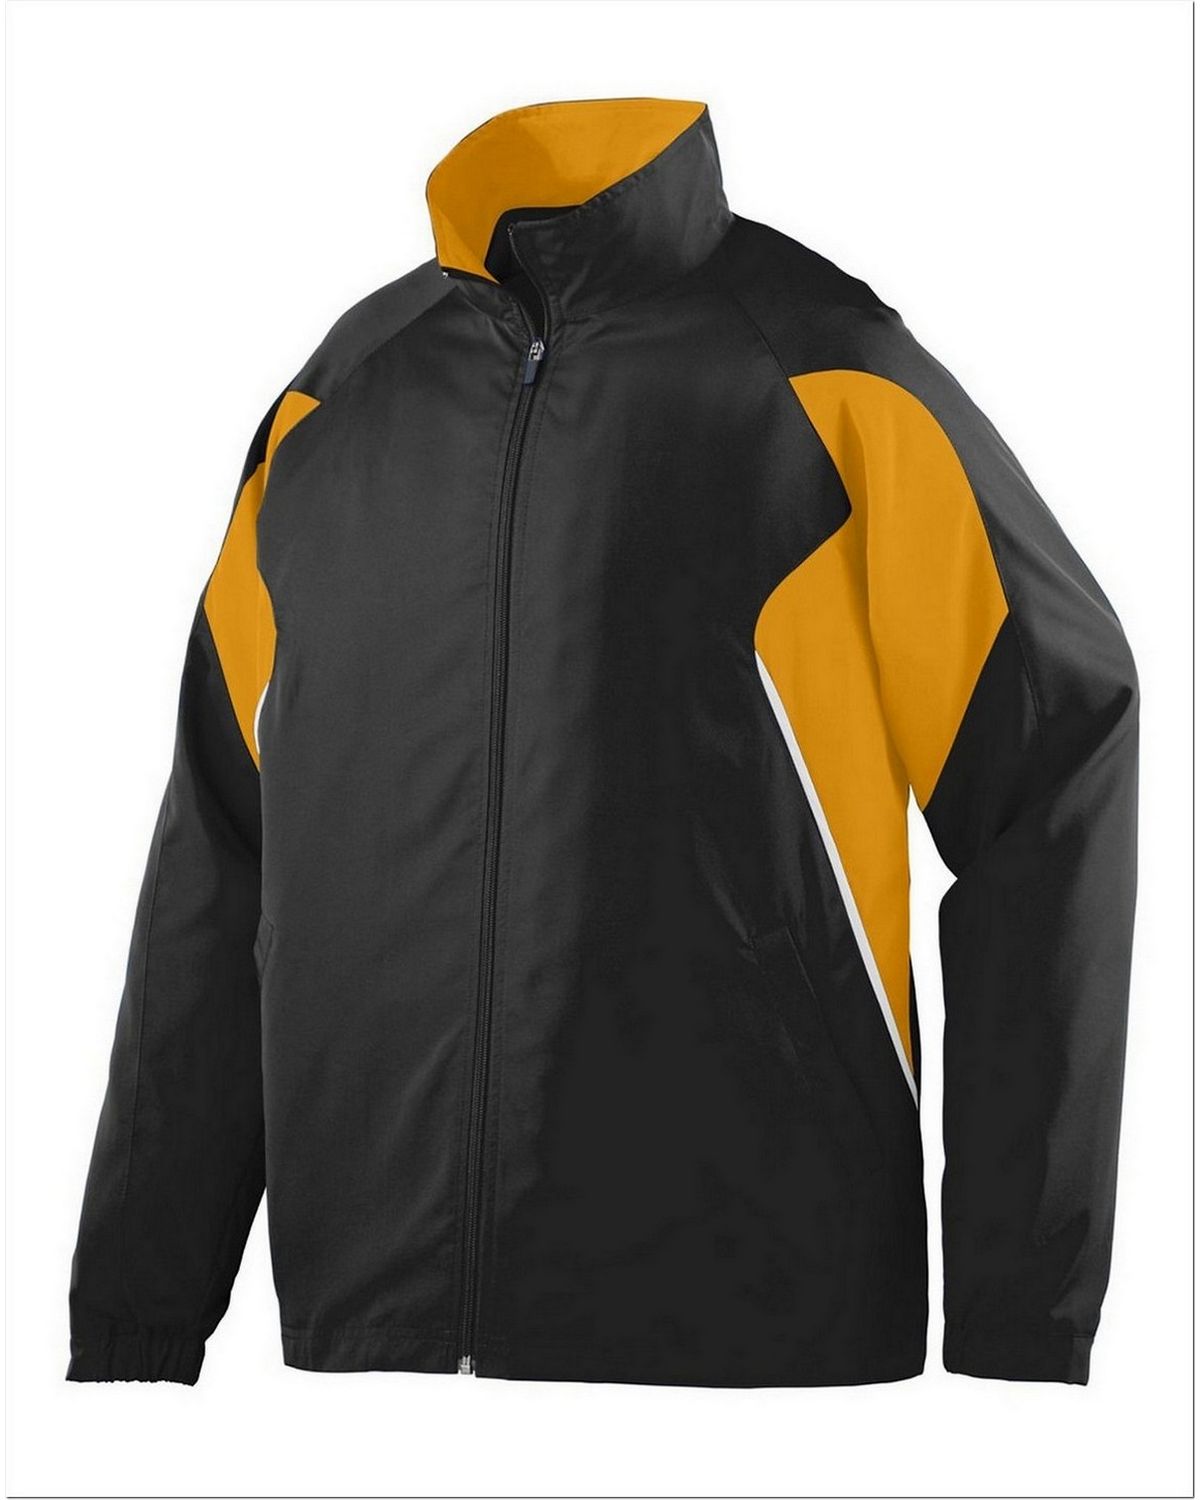 Augusta Sportswear 3730 Men's Water Resistant Polyester Diamond Tech Jacket